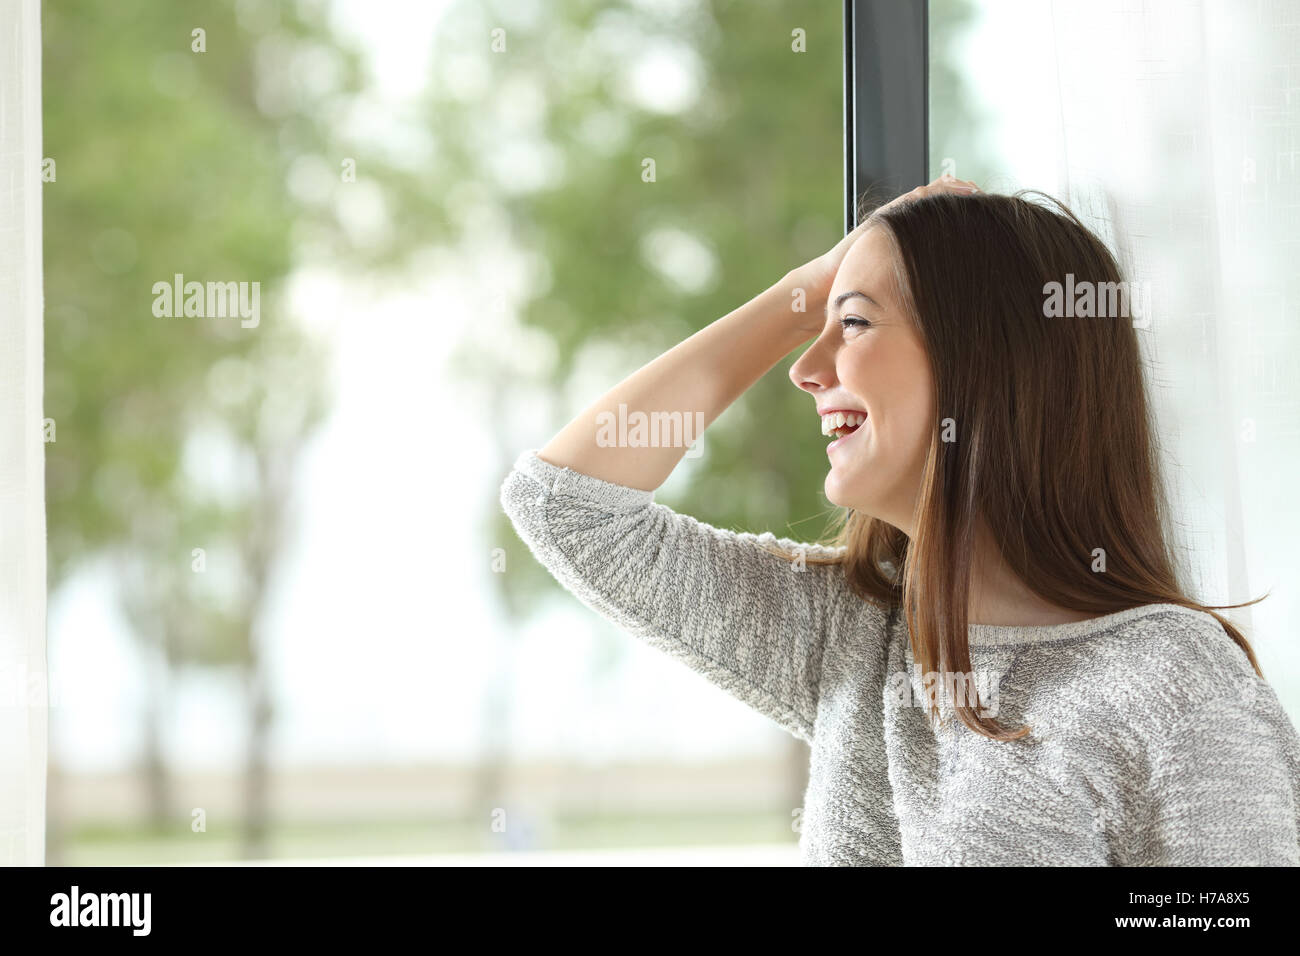 Vue latérale d'un happy girl laughing with hand on head et à l'extérieur à travers une fenêtre à la maison ou chambre d'hôtel Banque D'Images